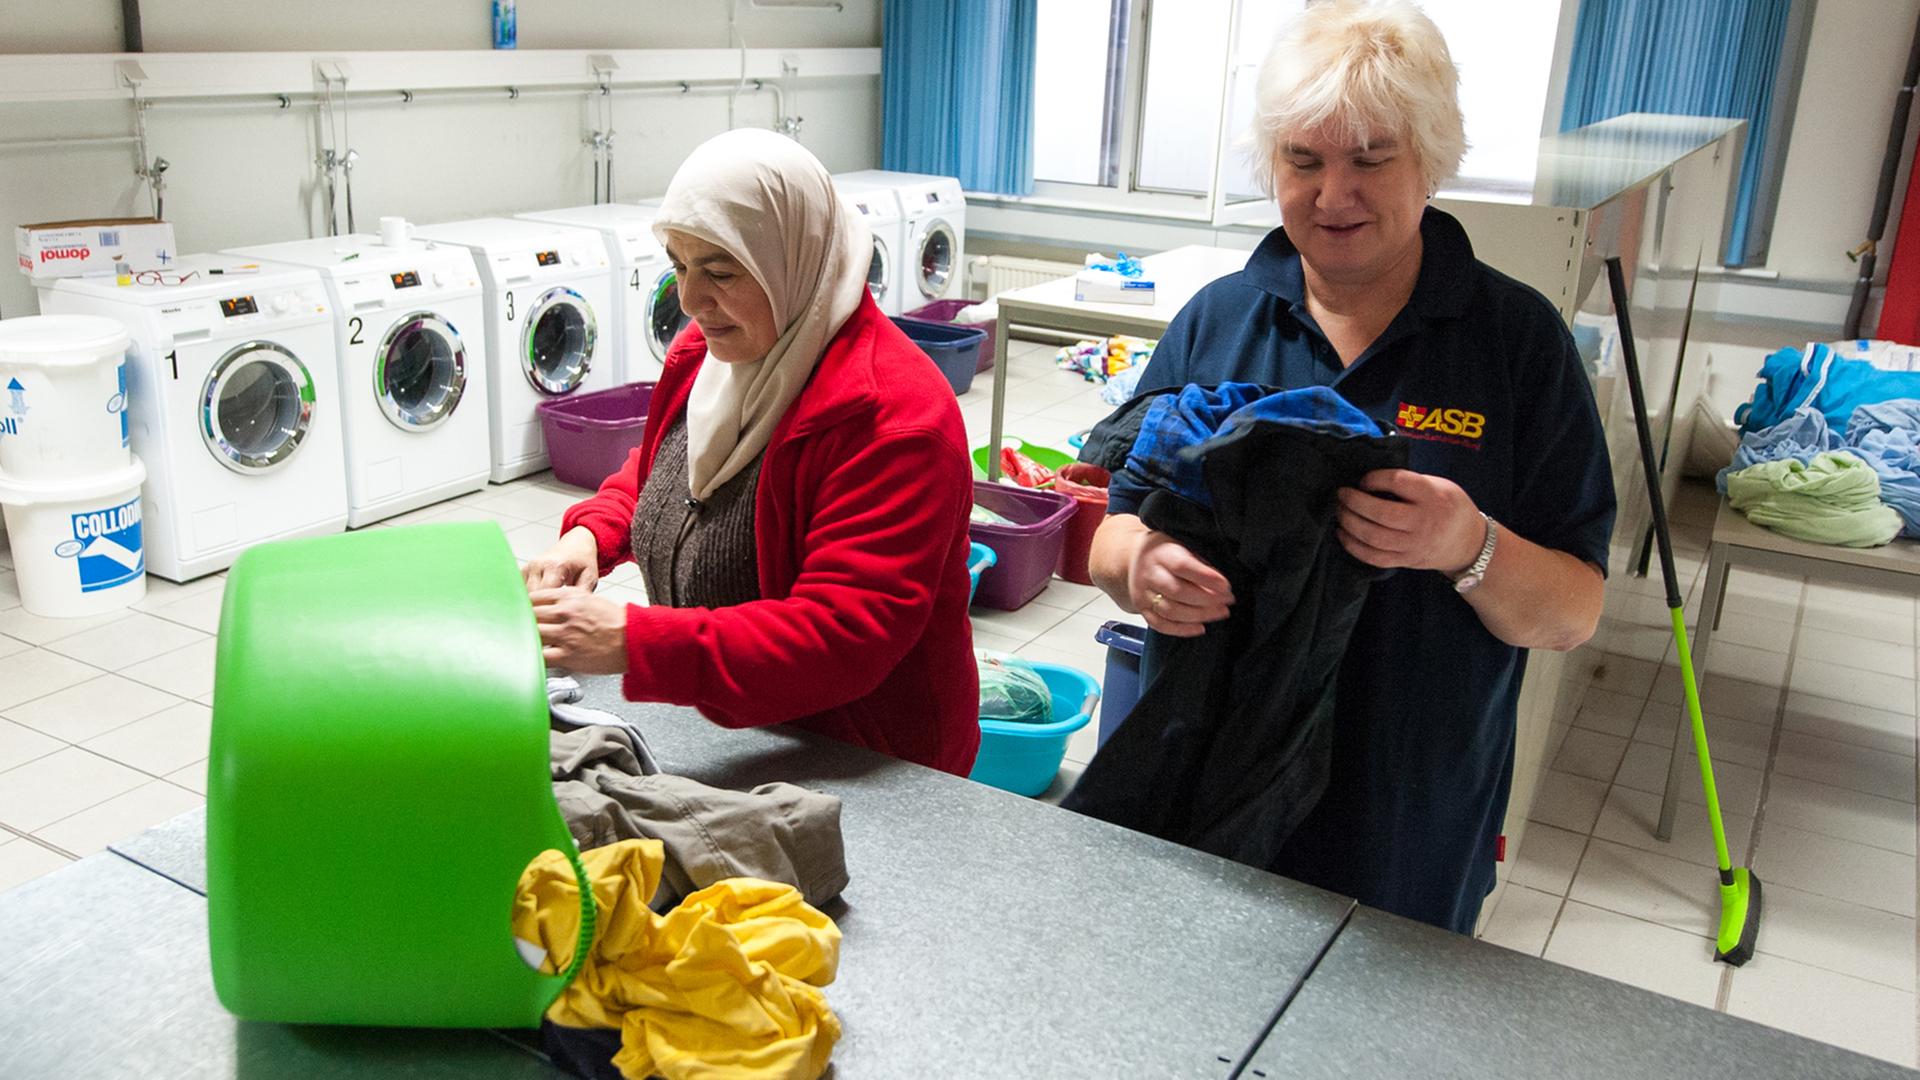 Eine Dame legt zusammen mit einer Flüchtlingsfrau Kleidung in einer Wäscherei zusammen.